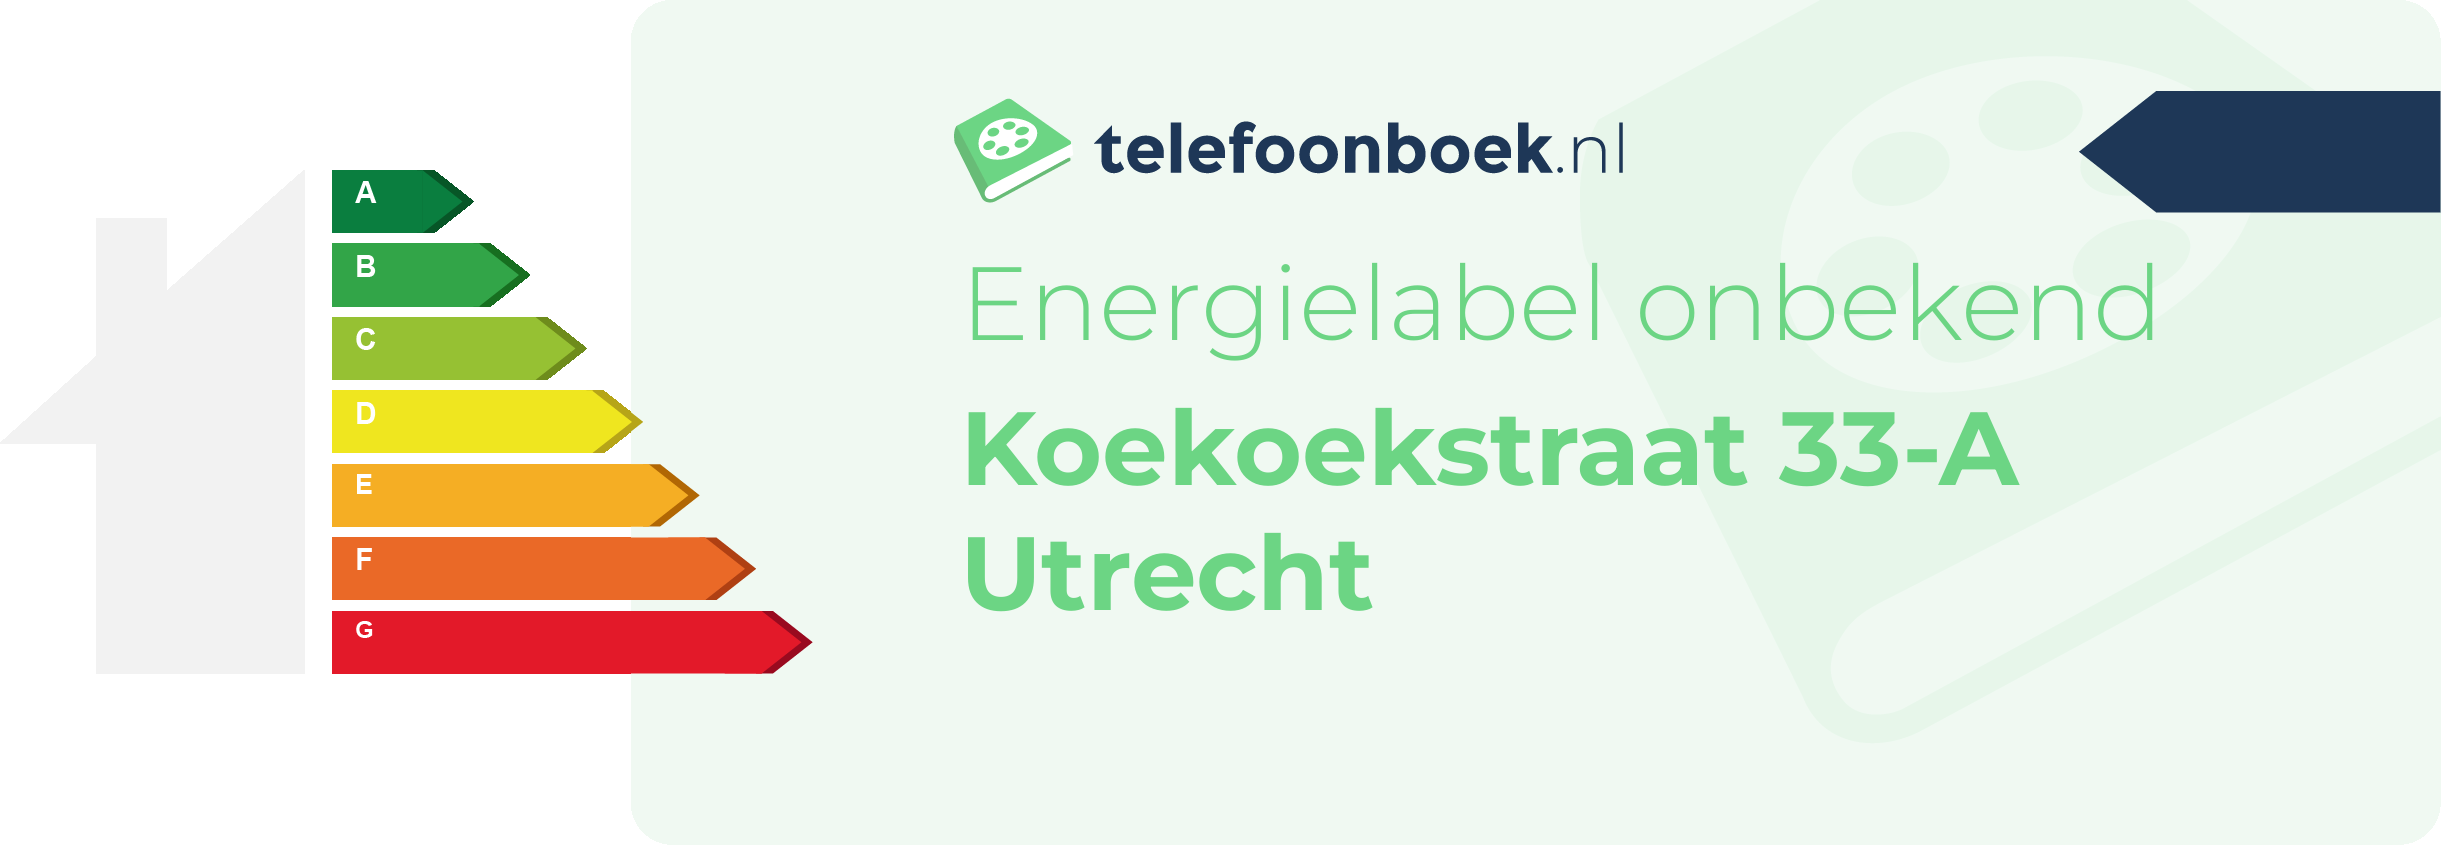 Energielabel Koekoekstraat 33-A Utrecht